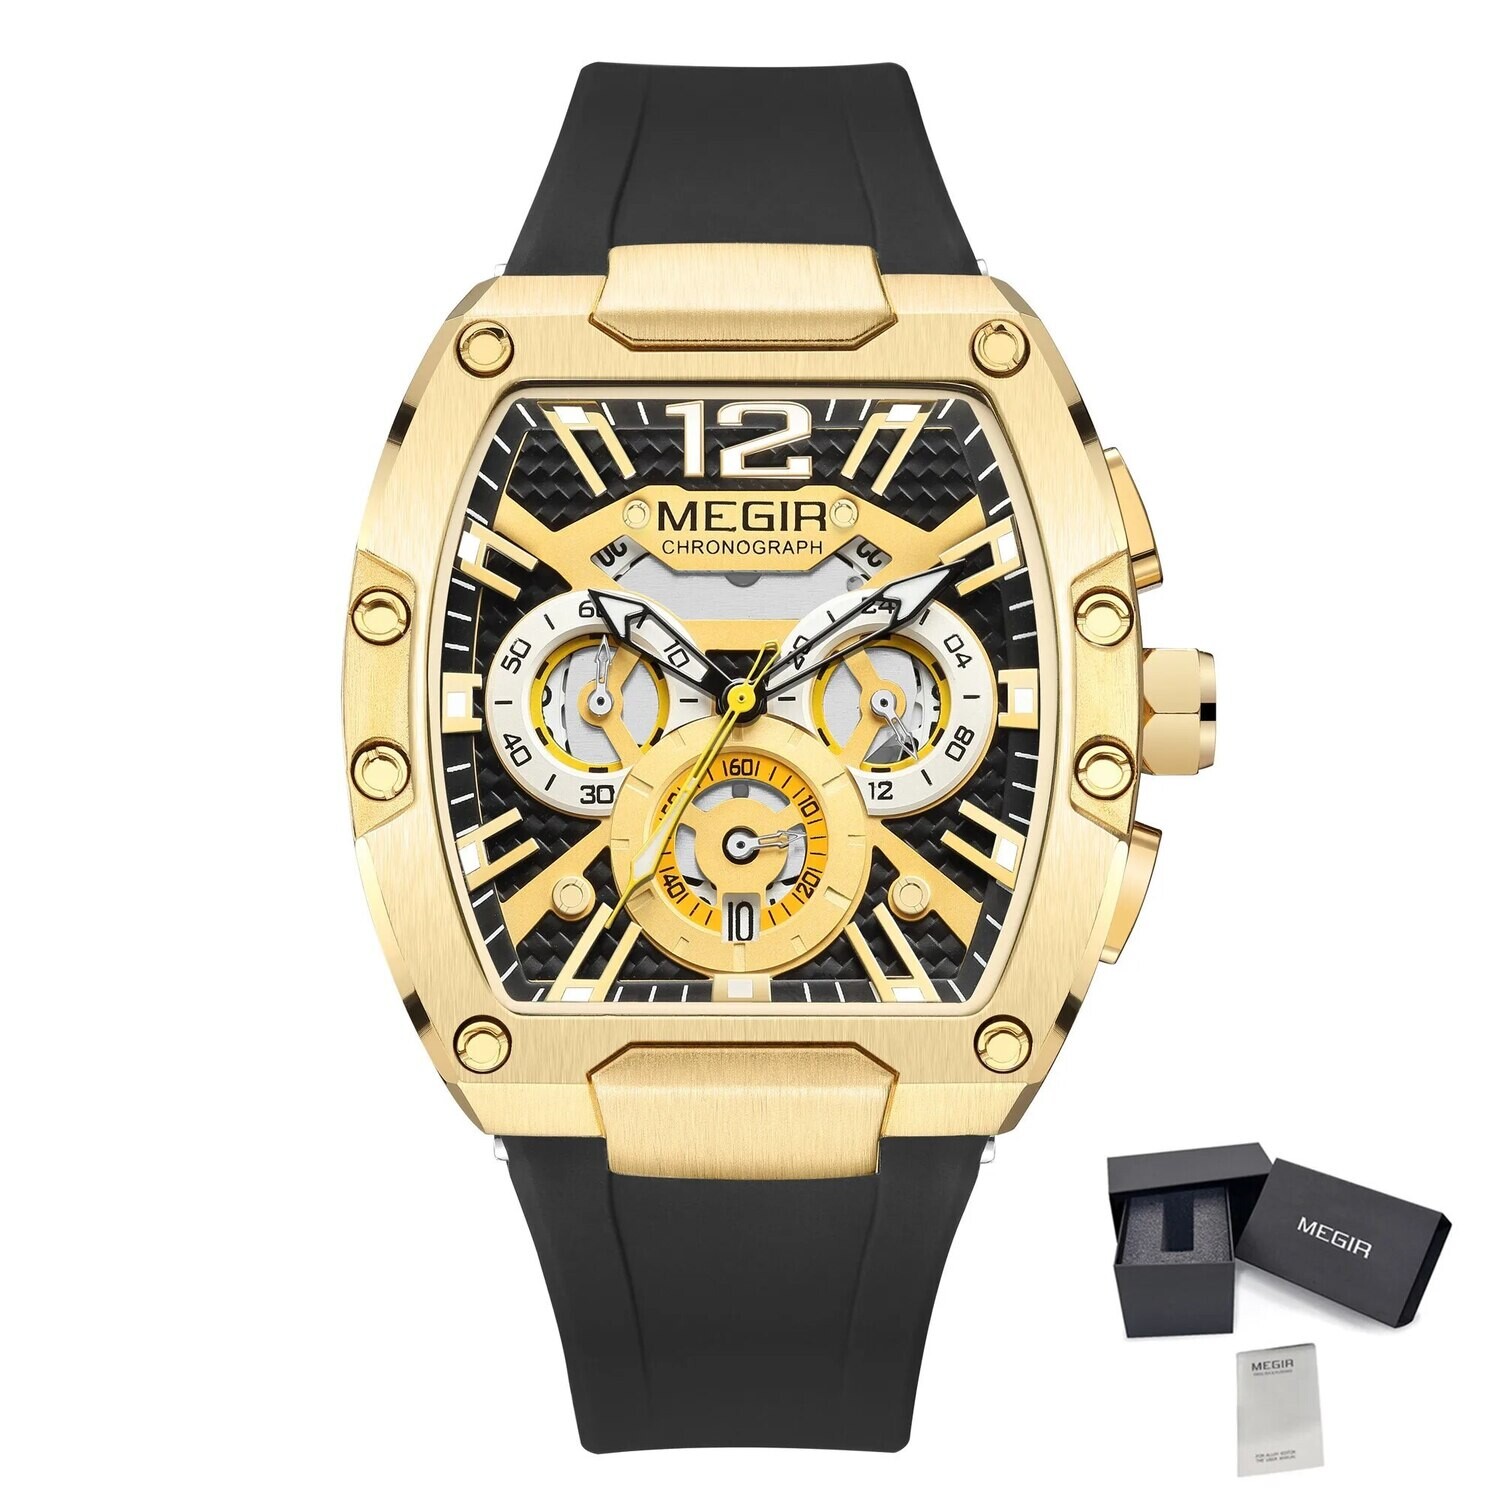 MEGIR Original Fashion Mens Watches Sport Military Chronograph Calendar Silicone Strap Quartz Wrist Watch Relogio Masculino